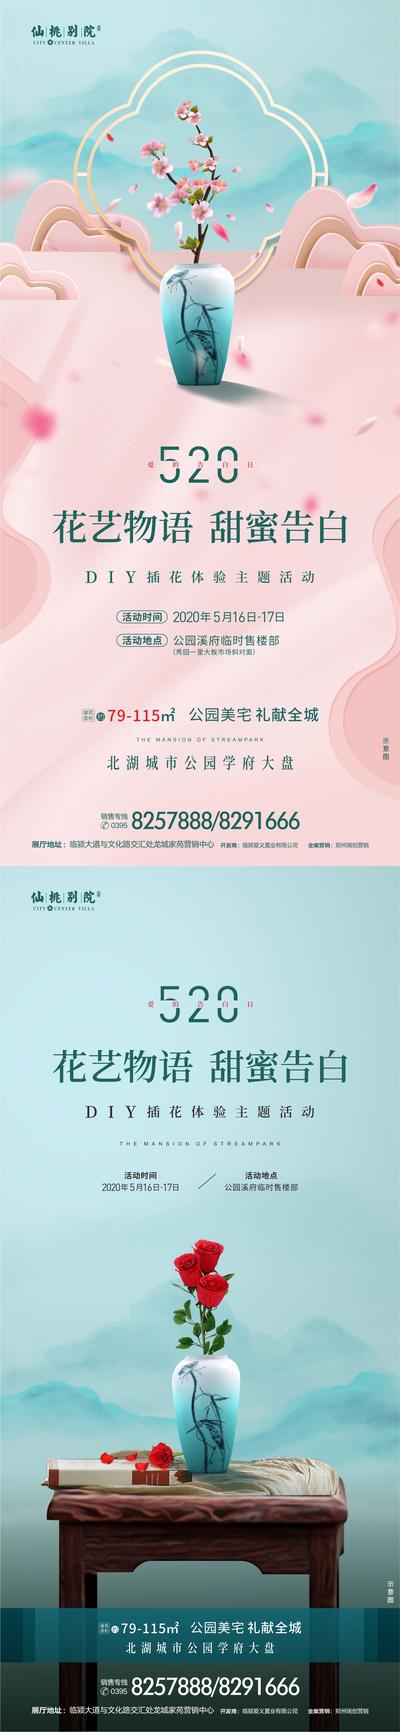 南门网 海报 房地产 公历节日 情人节  520 插花 中式  